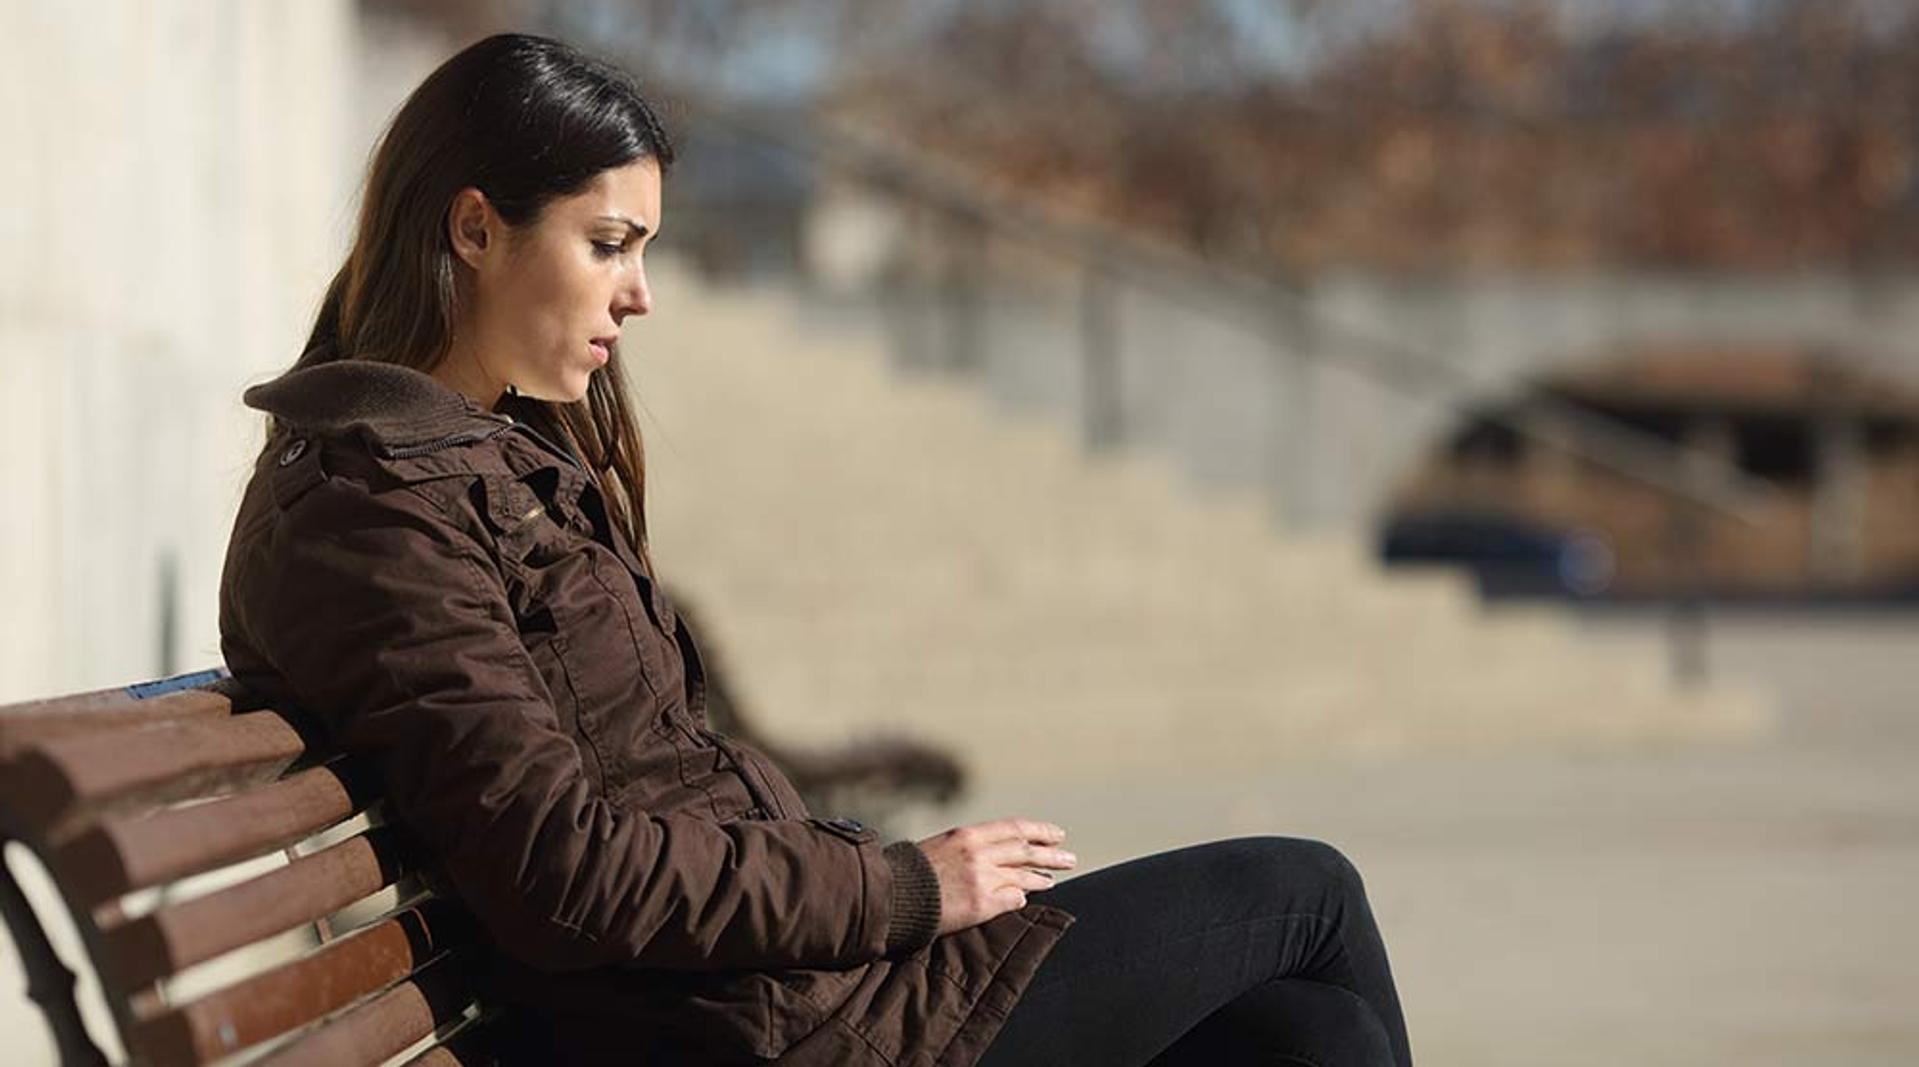 Jente med mørkt hår som sitter på en benk. Har på seg brun jakke og sort bukse. Ser trist ut. 